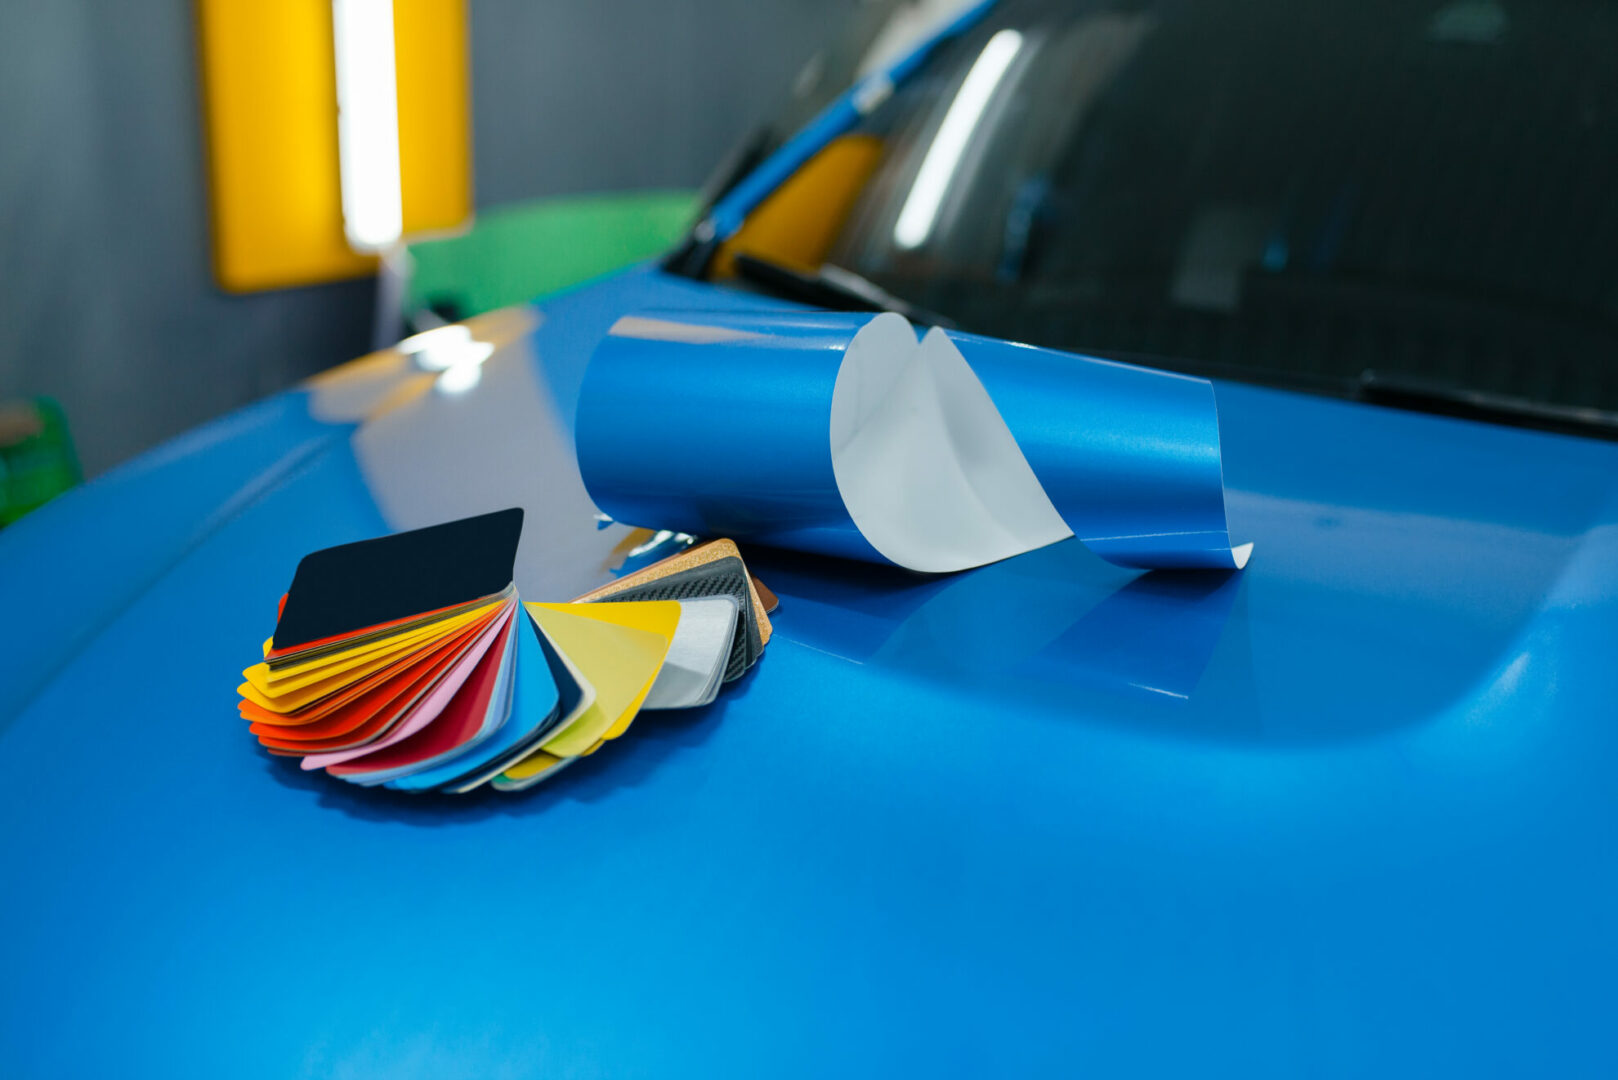 → Autofolie - Car Wrapping Folie in verschiedenen Farben und